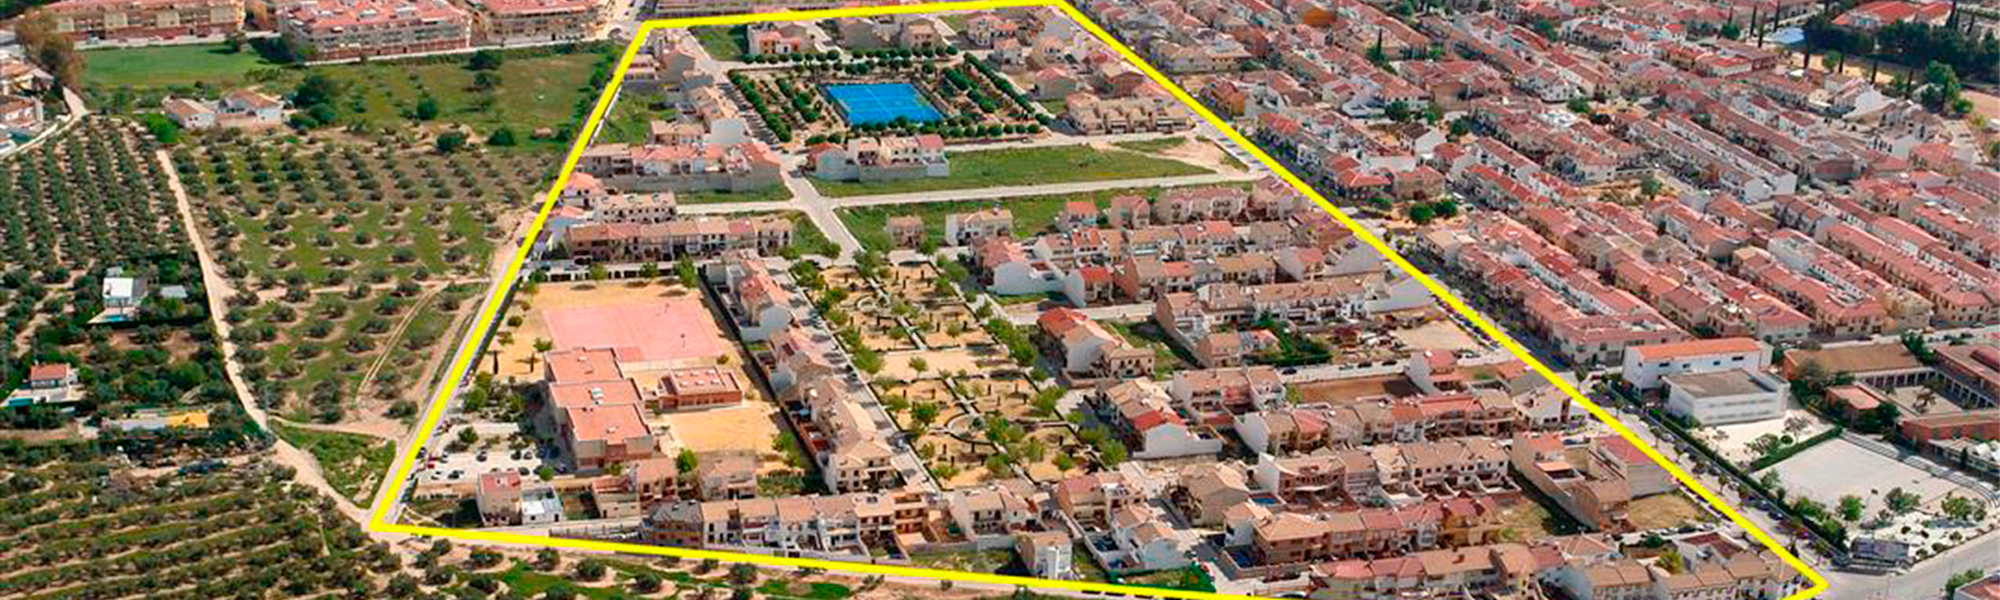 Hemos promovido los mejores desarrollos inmobiliarios. FORTIER INMOBILIARIA en Martos